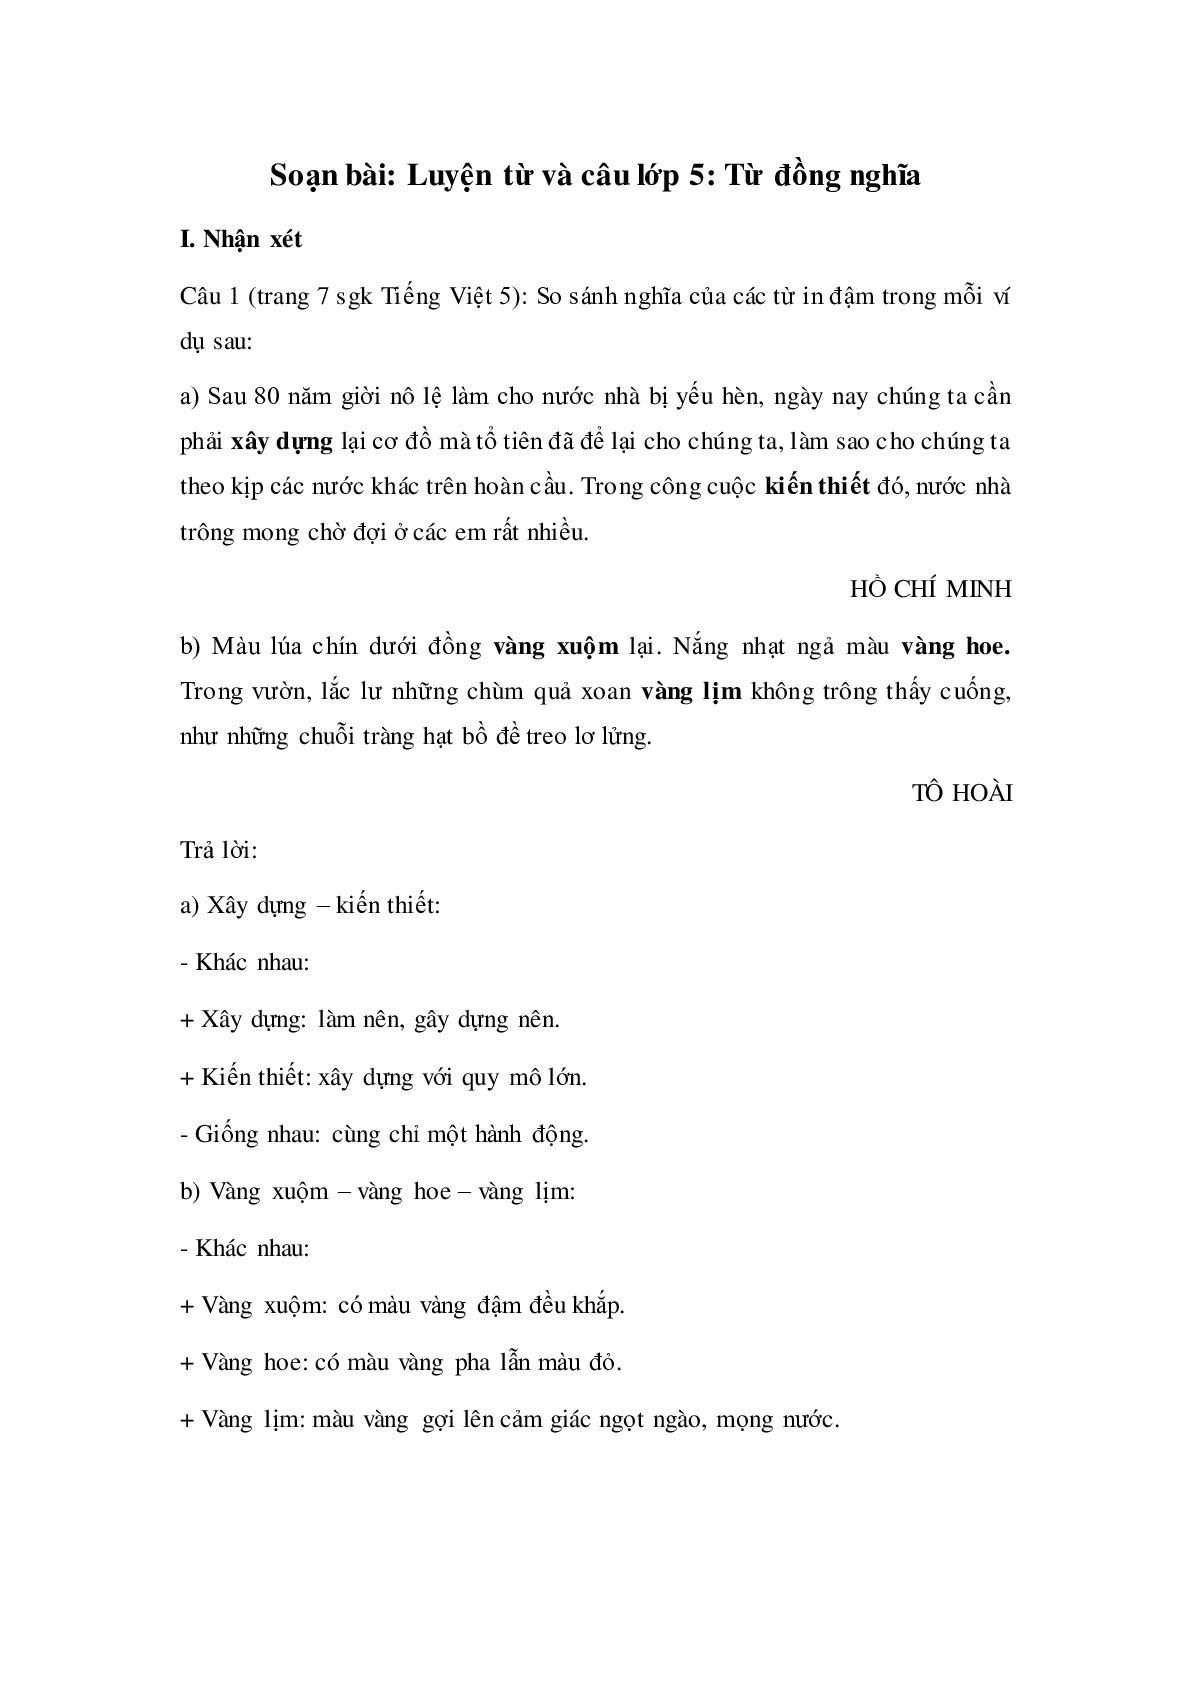 Soạn Tiếng Việt lớp 5: Luyện từ và câu- Từ đồng nghĩa mới nhất (trang 1)